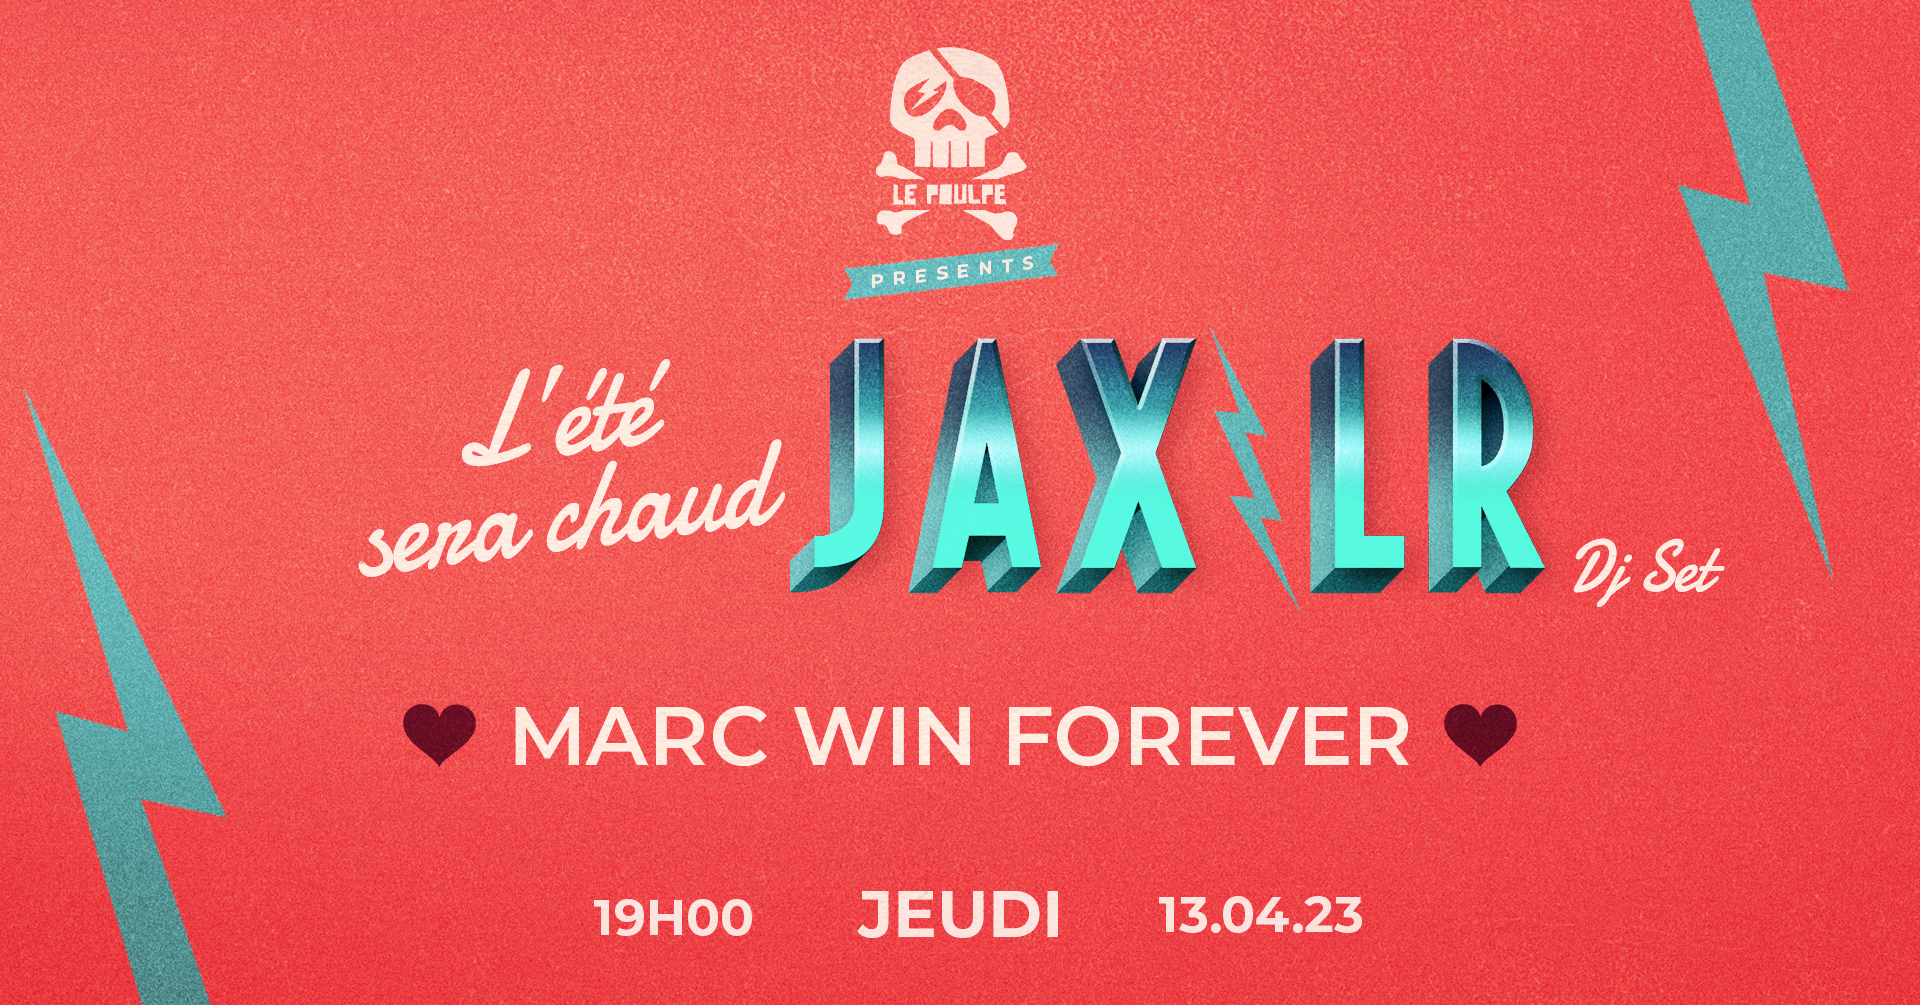 L'été sera chaud / JAX LR / Marc Win Forever @ Le Poulpe